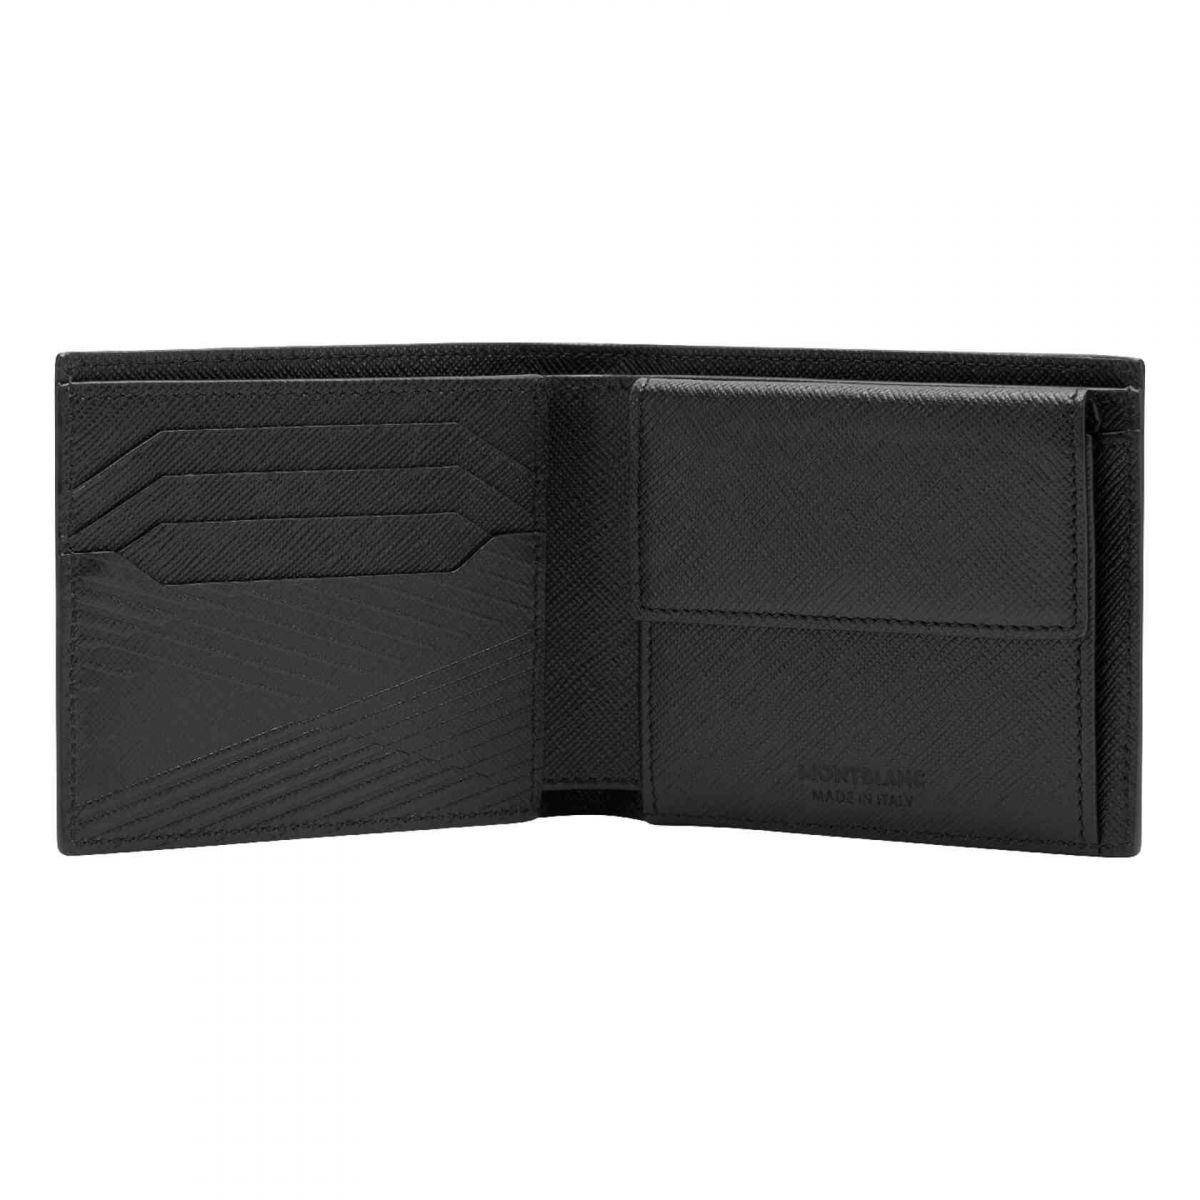 萬寶龍卡夾附零錢袋帶有四個信用卡槽、兩個鈔票隔層及一個零錢袋